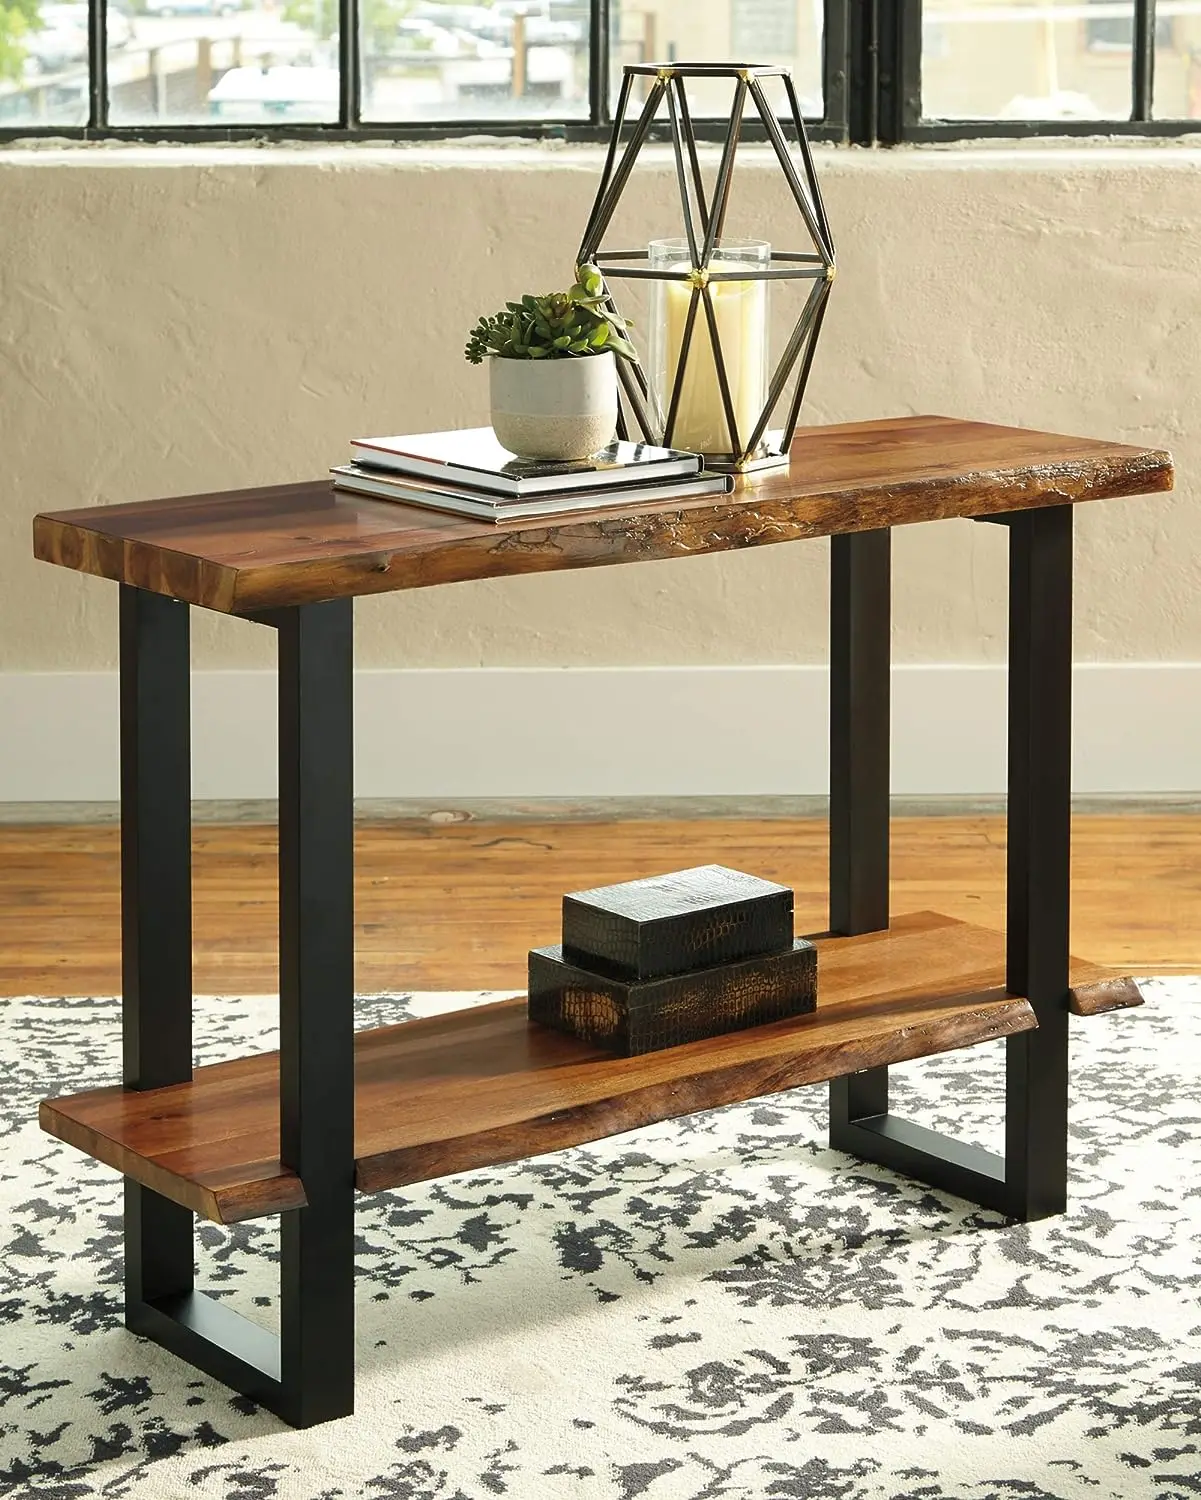 

Деревенский Прямоугольный Диван-стол с полкой, коричневый и черный с натуральной отделкой древесины, маленькие столы